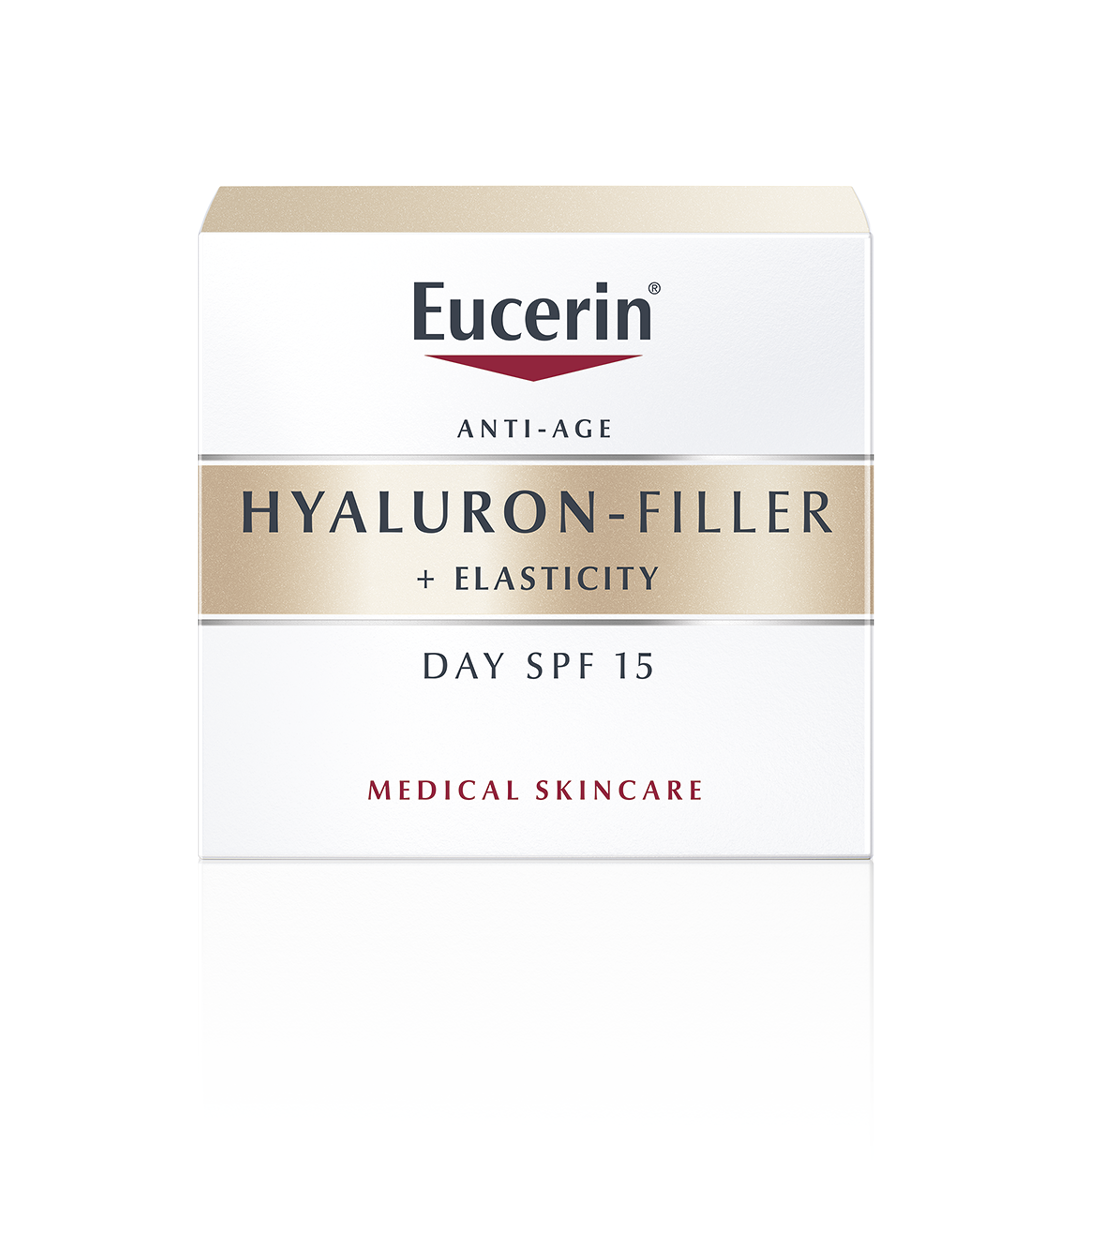 Эуцерин hyaluron-filler+elasticity крем для дневного ухода за кожей банка 50мл (69675) Beiersdorf AG (Польша) - фото №10